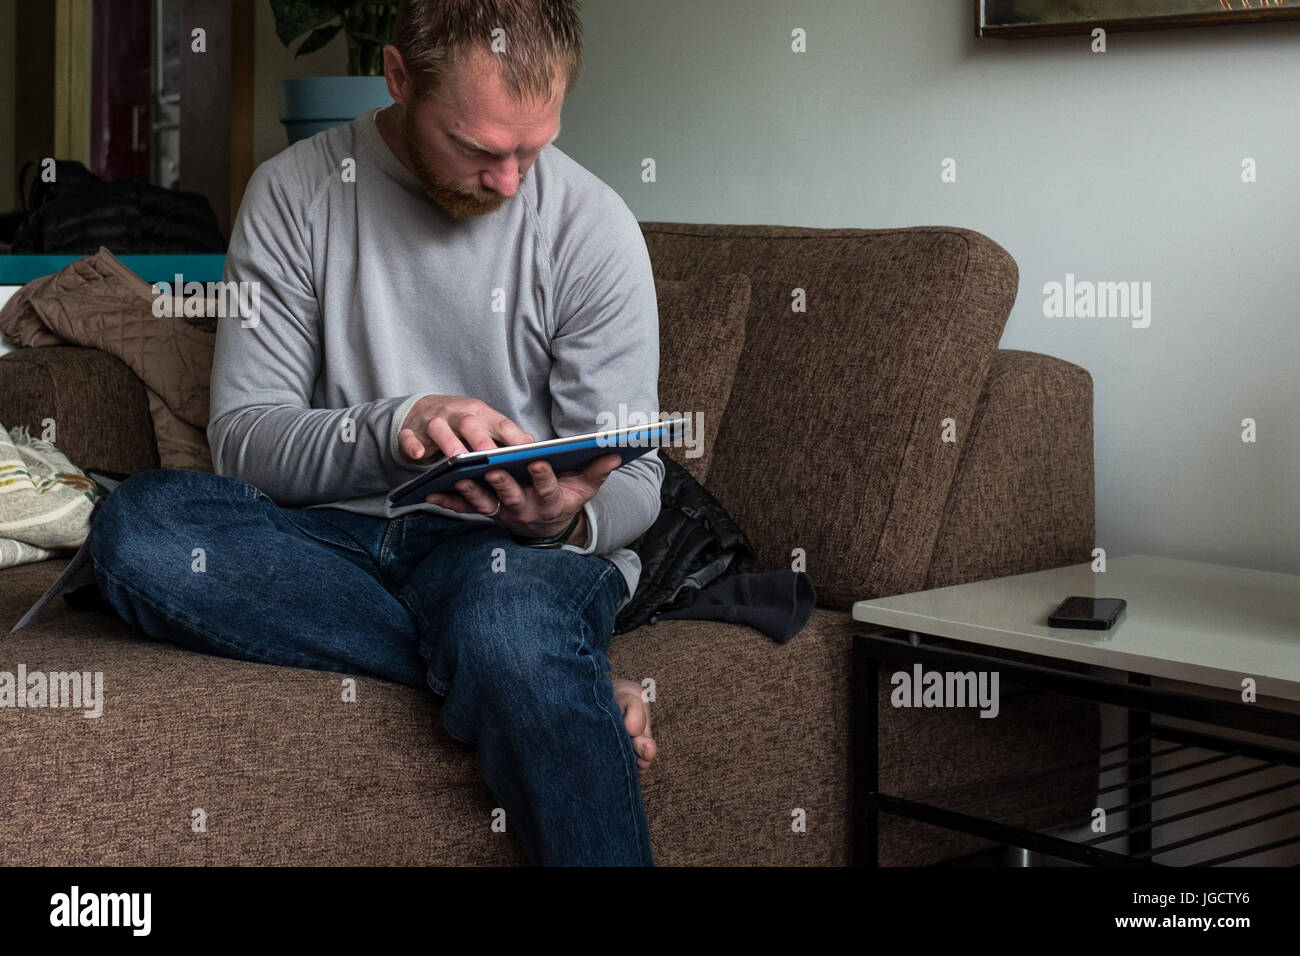 Uomo seduto sul lettino usando una tavoletta digitale Foto Stock